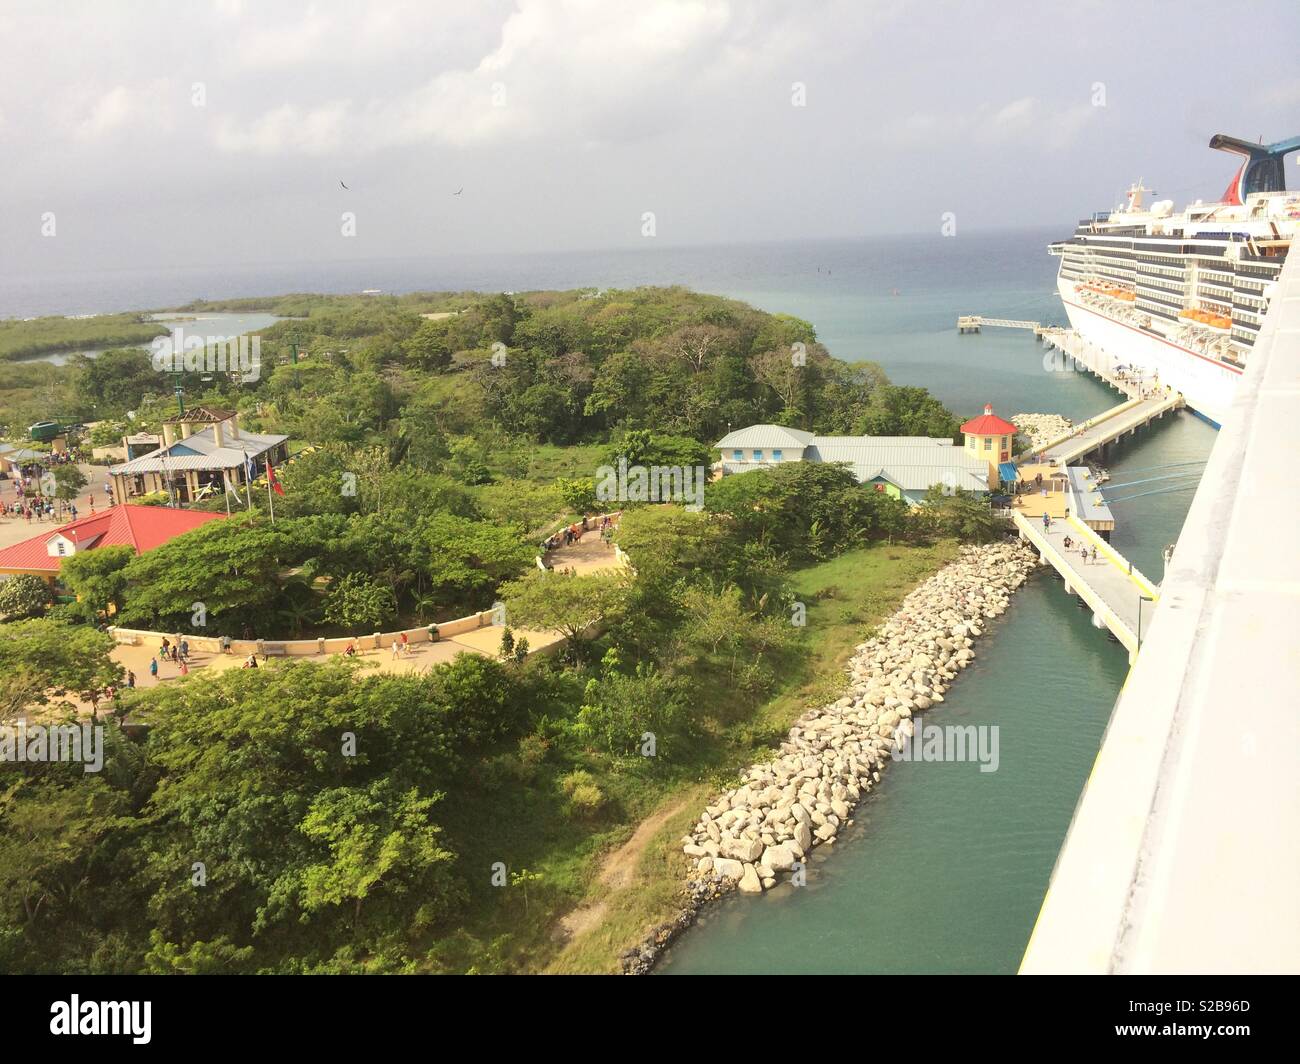 Carnival Cruise Ship Docked At Port In Mahogany Bay Honduras Stock Photo Alamy